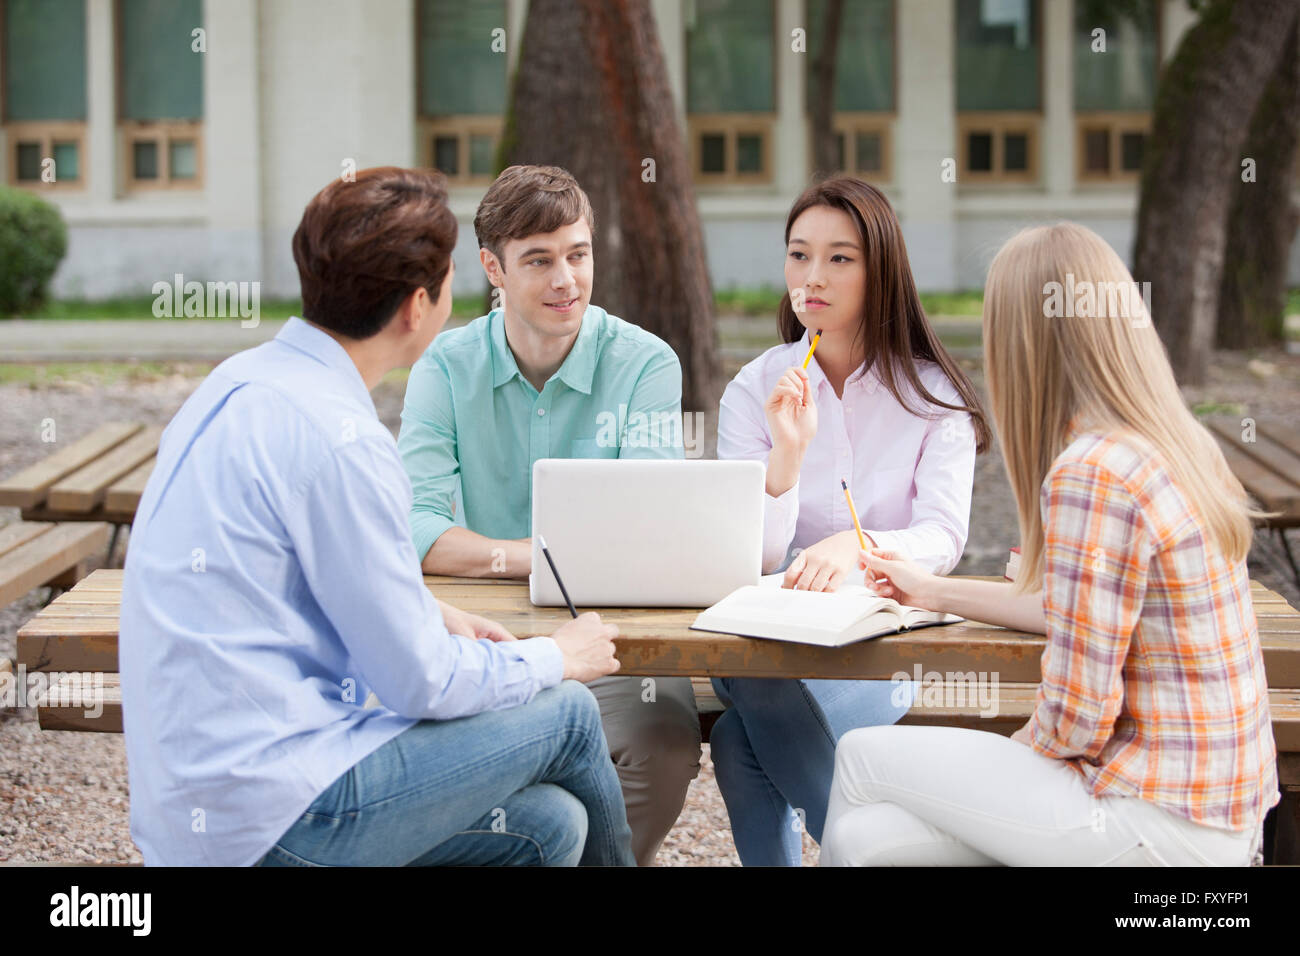 Quattro studenti del college compresi nazionali ed internazionali di studenti seduti attorno a un tavolo e avente una discussione insieme al di fuori del campus Foto Stock